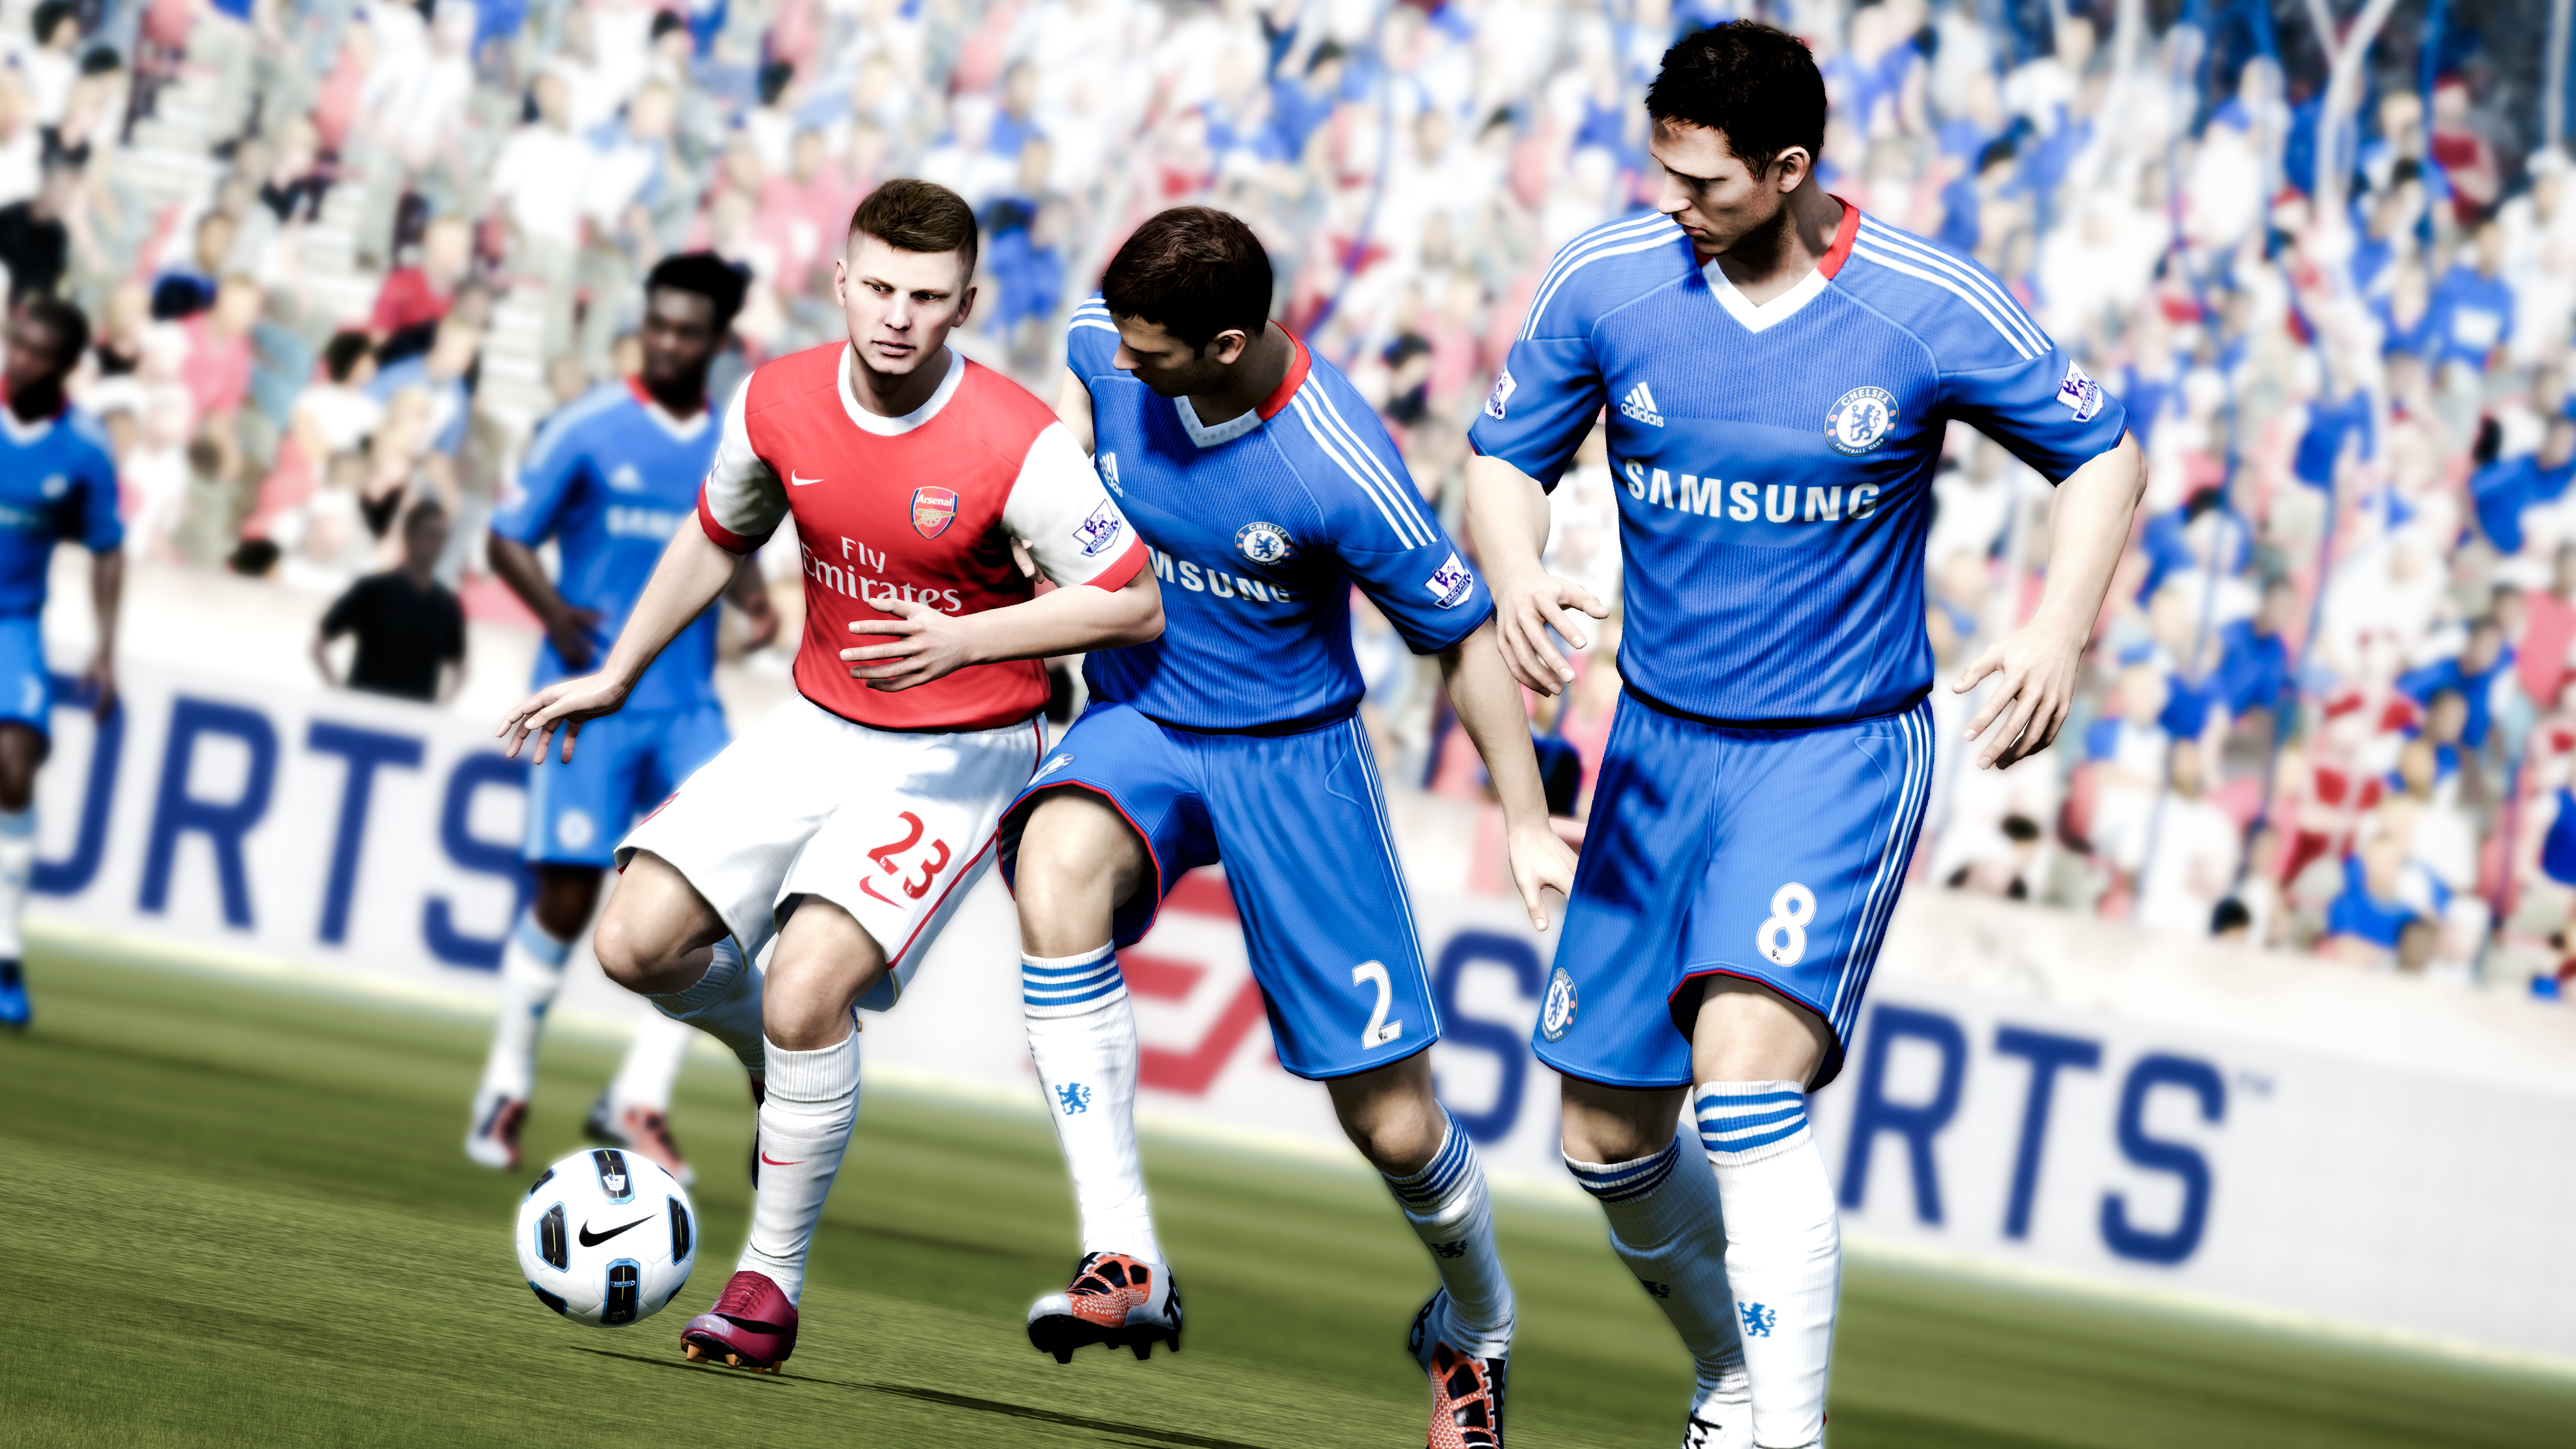 Immagine pubblicata in relazione al seguente contenuto: Electronic Arts rilascia la demo per PC di FIFA Soccer 12 | Nome immagine: news15707_3.jpg